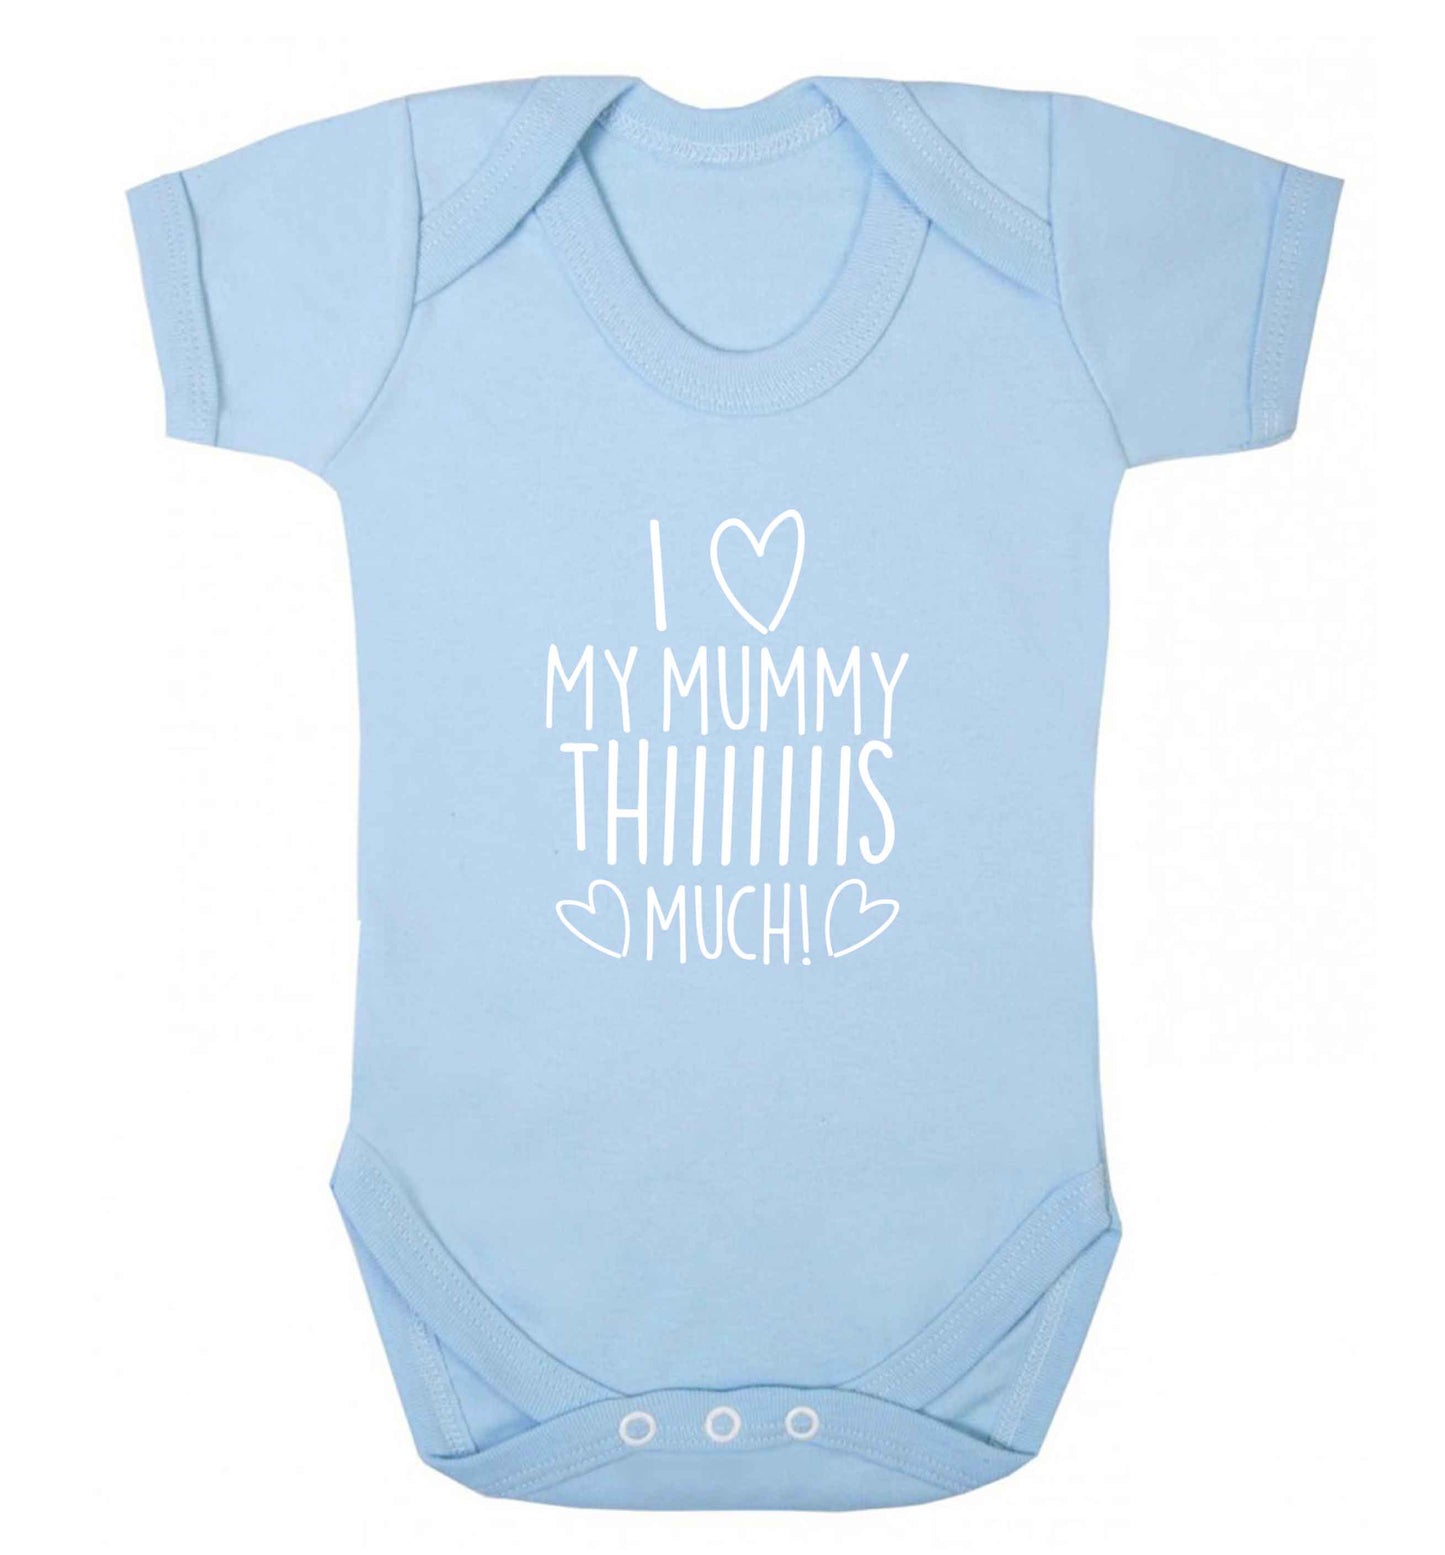 I love my mummy thiiiiis much! baby vest pale blue 18-24 months